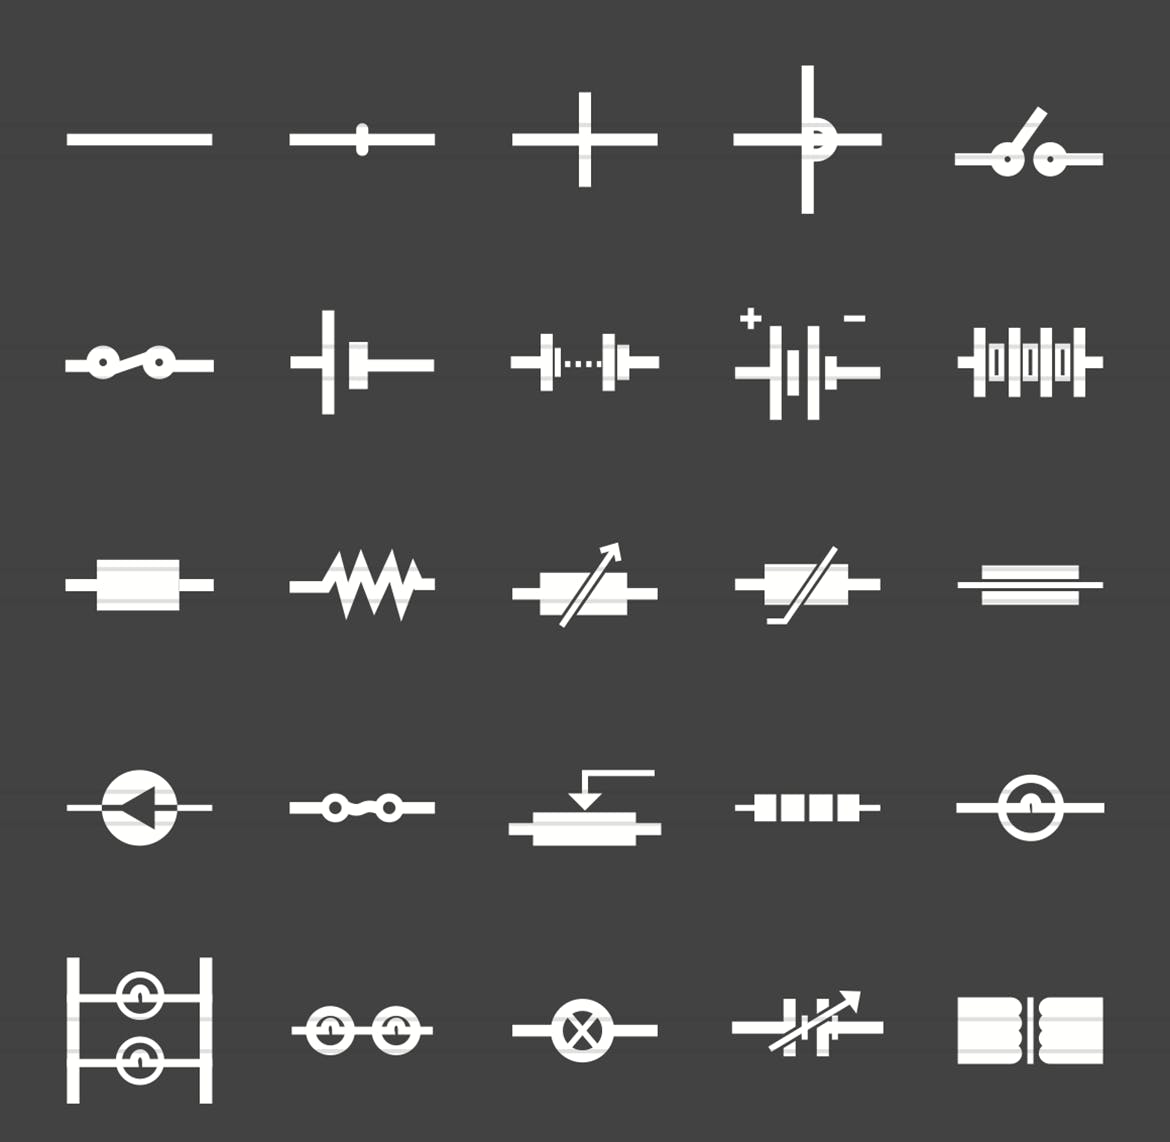 50枚电路线路板主题反转色字体大洋岛精选图标 50 Electric Circuits Glyph Inverted Icons插图1